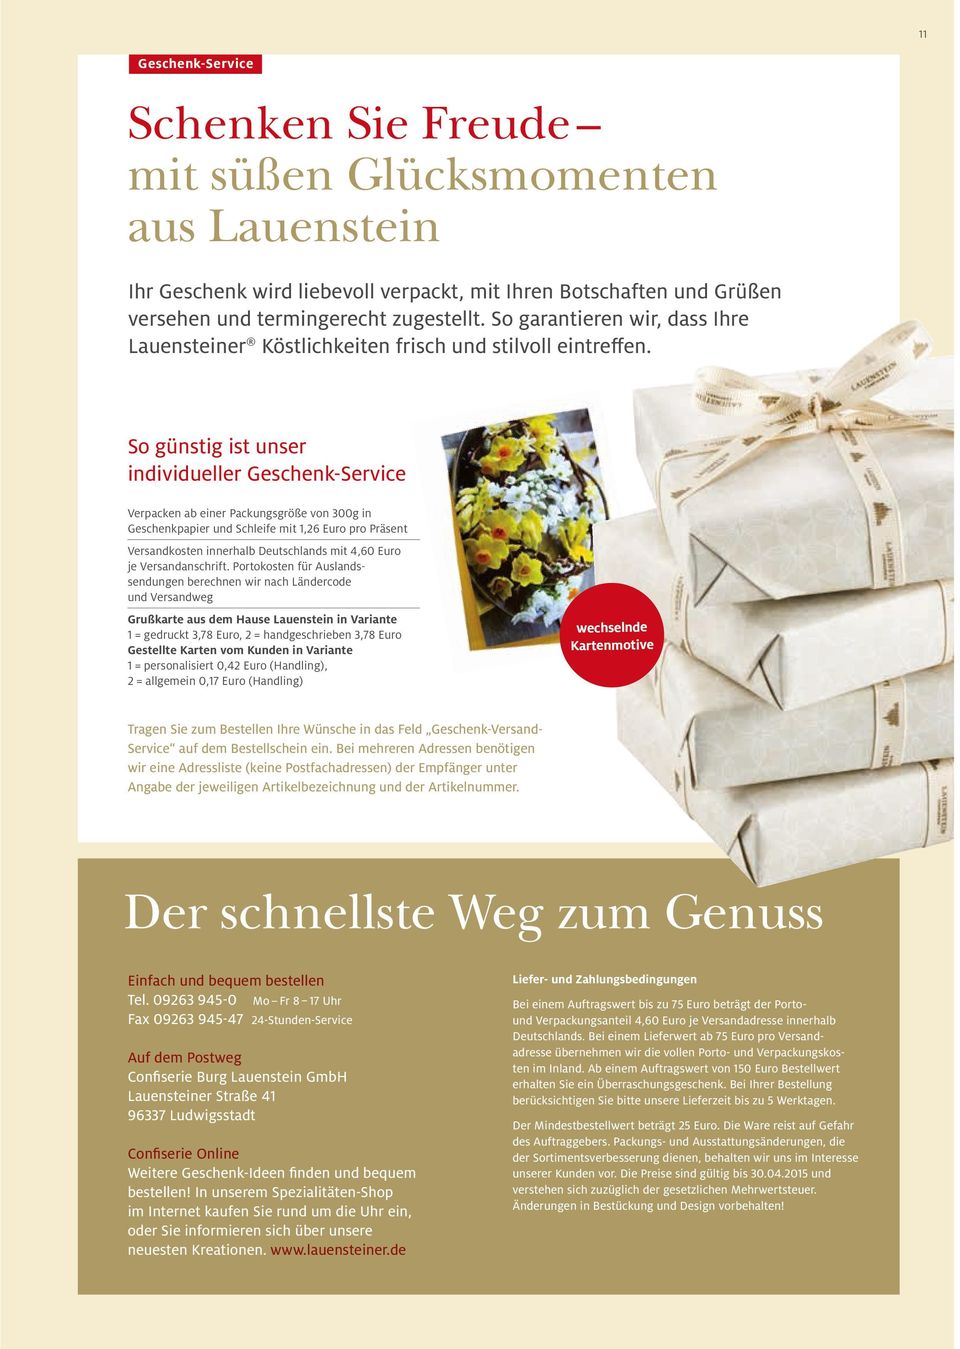 So günstig ist unser individueller Geschenk-Service Verpacken ab einer Packungsgröße von 300g in Geschenkpapier und Schleife mit 1,26 Euro pro Präsent Versandkosten innerhalb Deutschlands mit 4,60